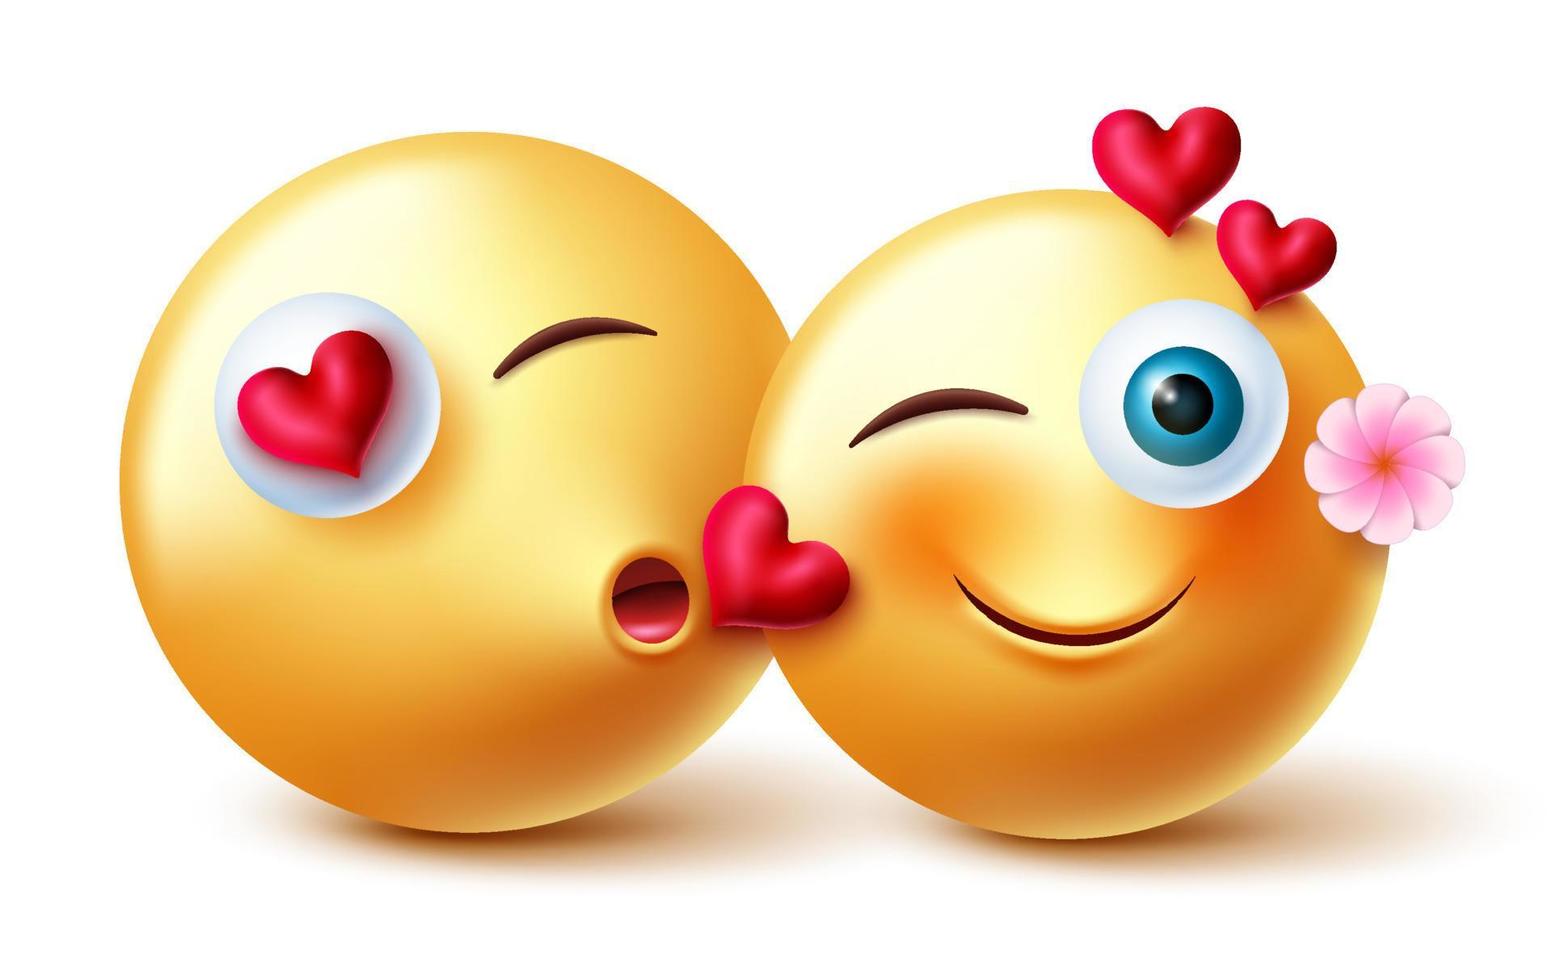 emojis alla hjärtans par emojis vektordesign. älska 3d-emoji-emoji-karaktärer i kyssande romantiska uttryck och gester för alla hjärtans kärlek älskare-karaktärkoncept. vektor illustration.